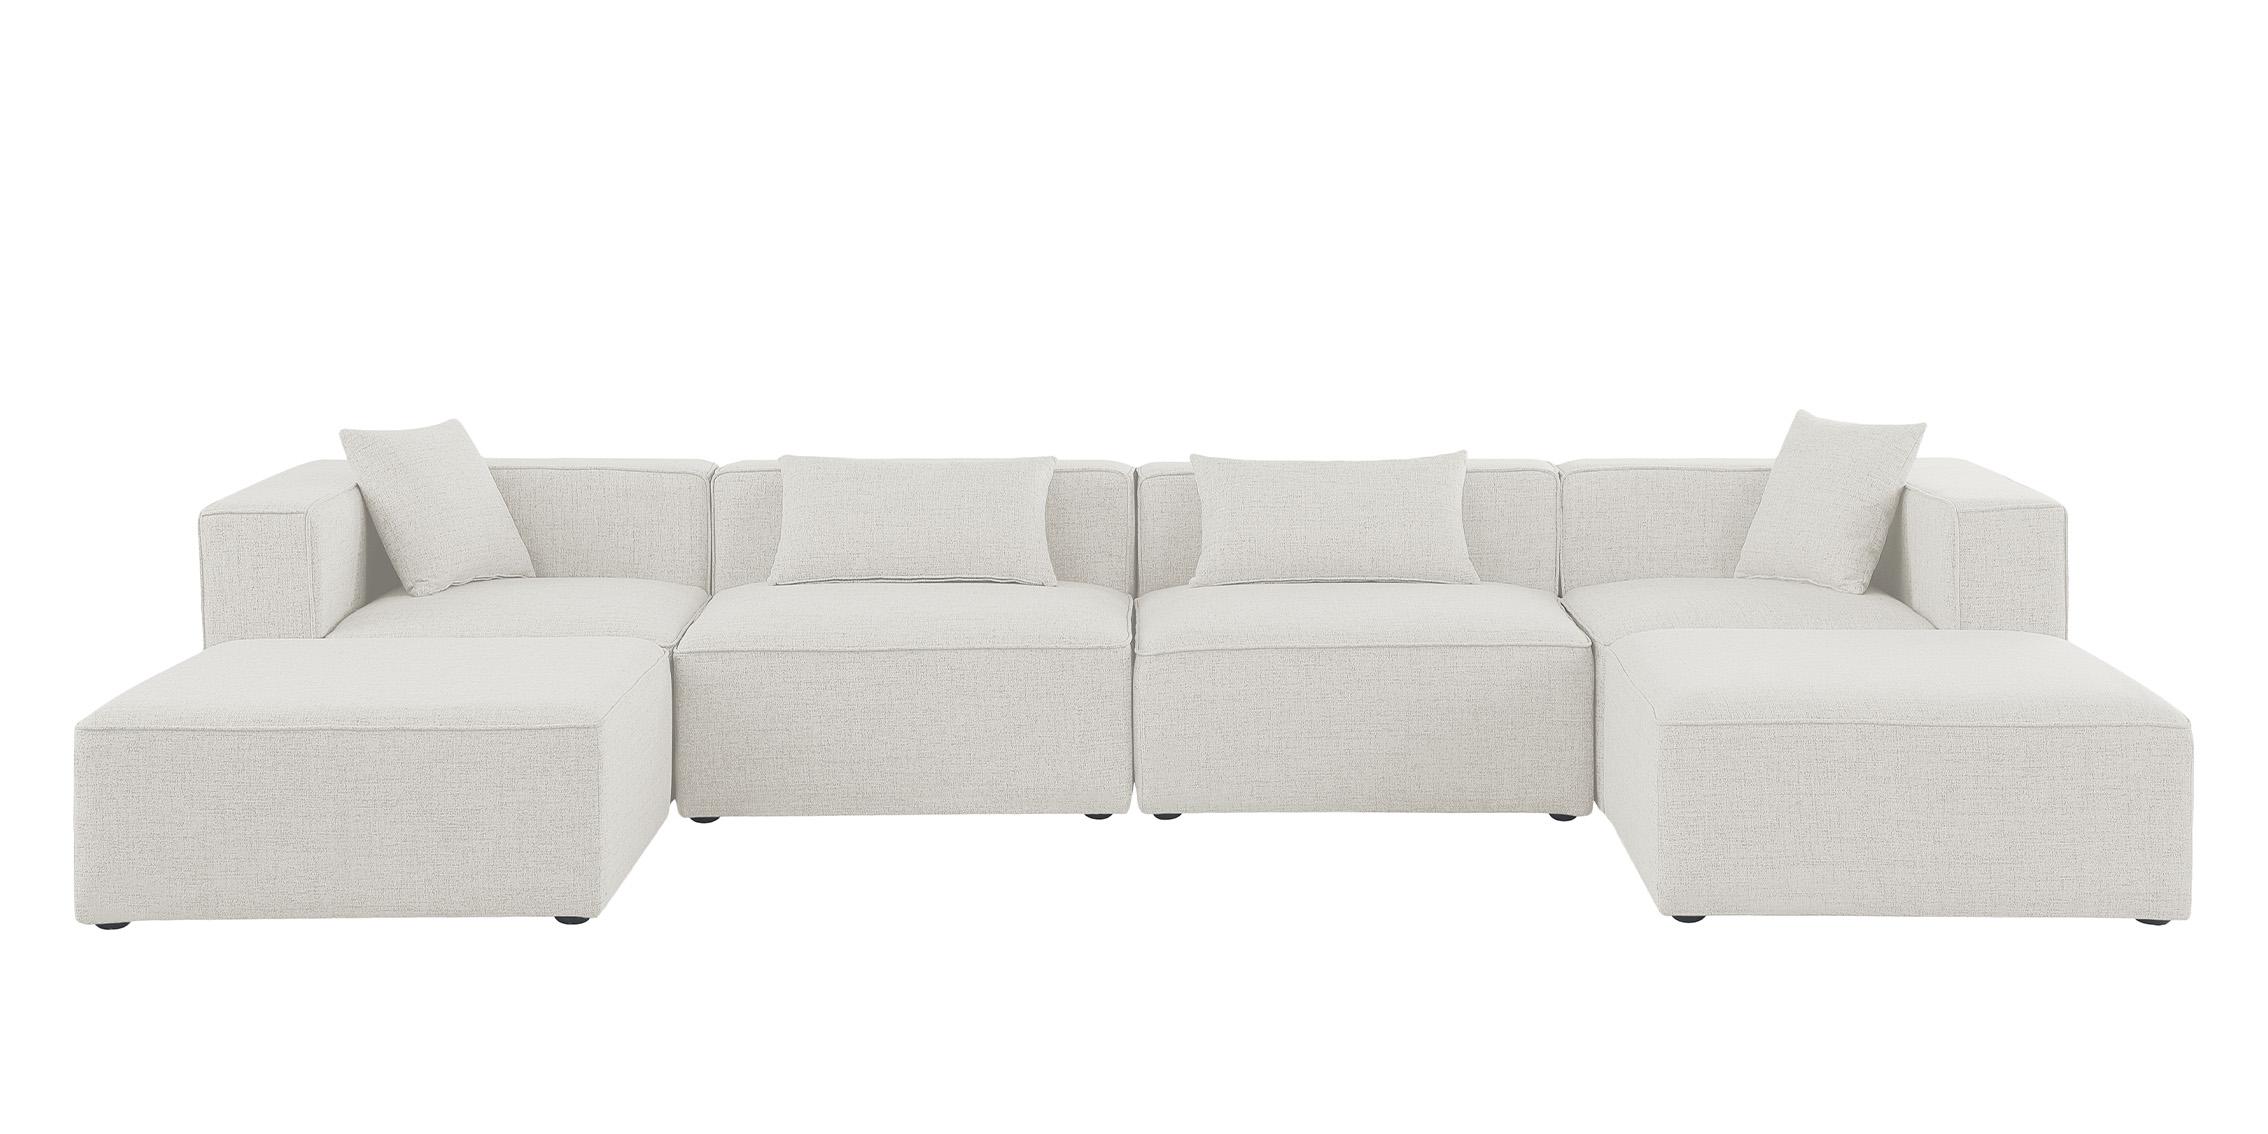 

    
Meridian Furniture CUBE 630Cream-Sec6B Modular Sectional Sofa Cream 630Cream-Sec6B
